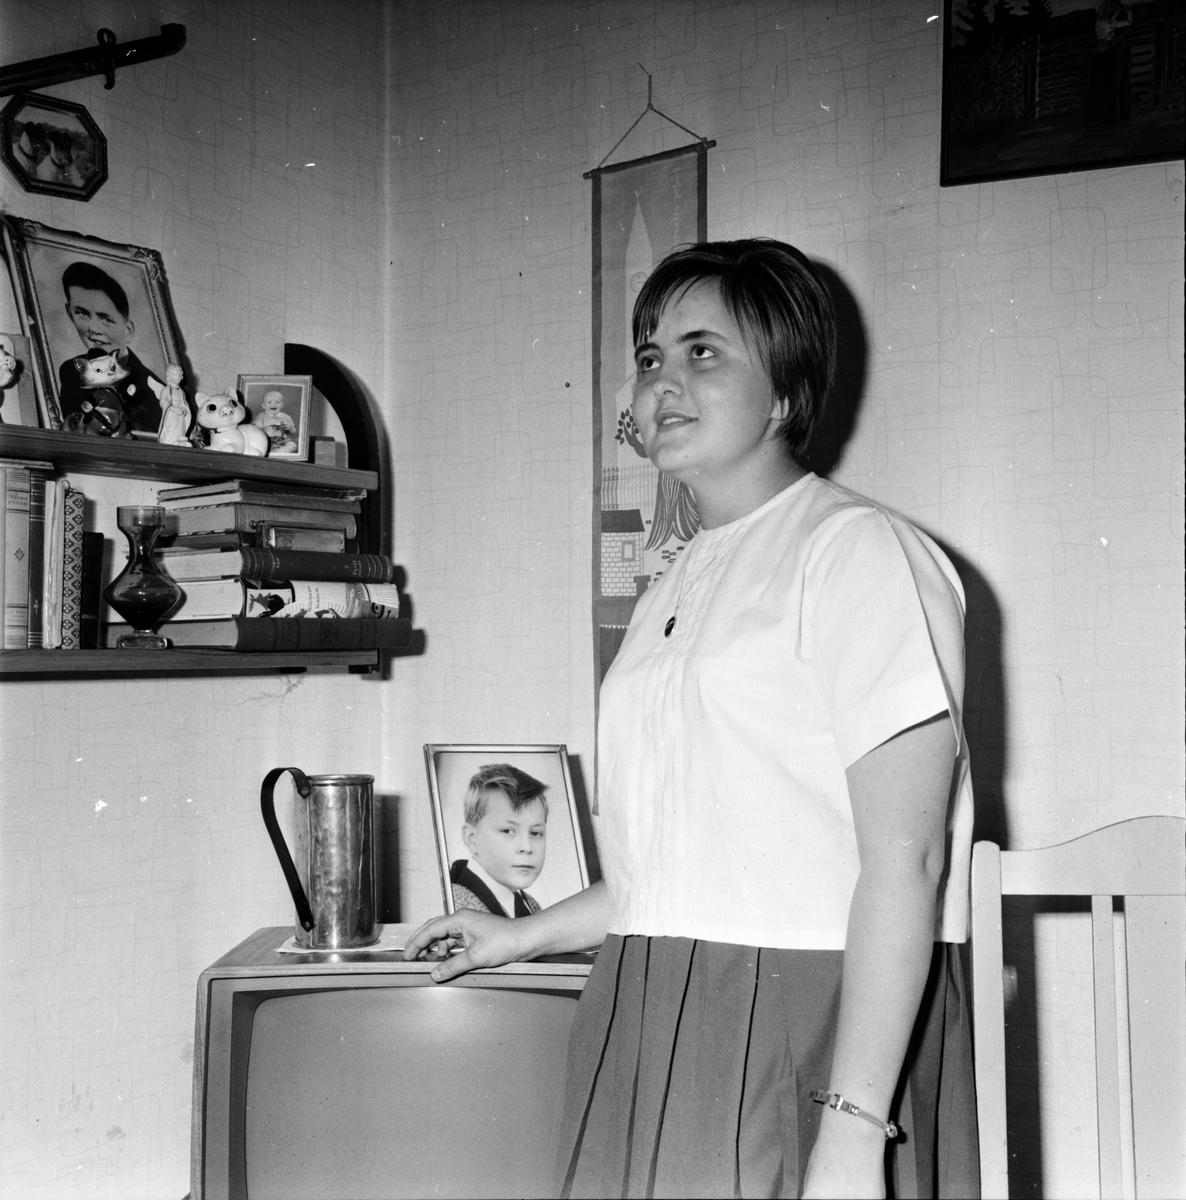 Wiger Sonja, Pol.sjuk,
Järvsö,
11 Mars 1964
